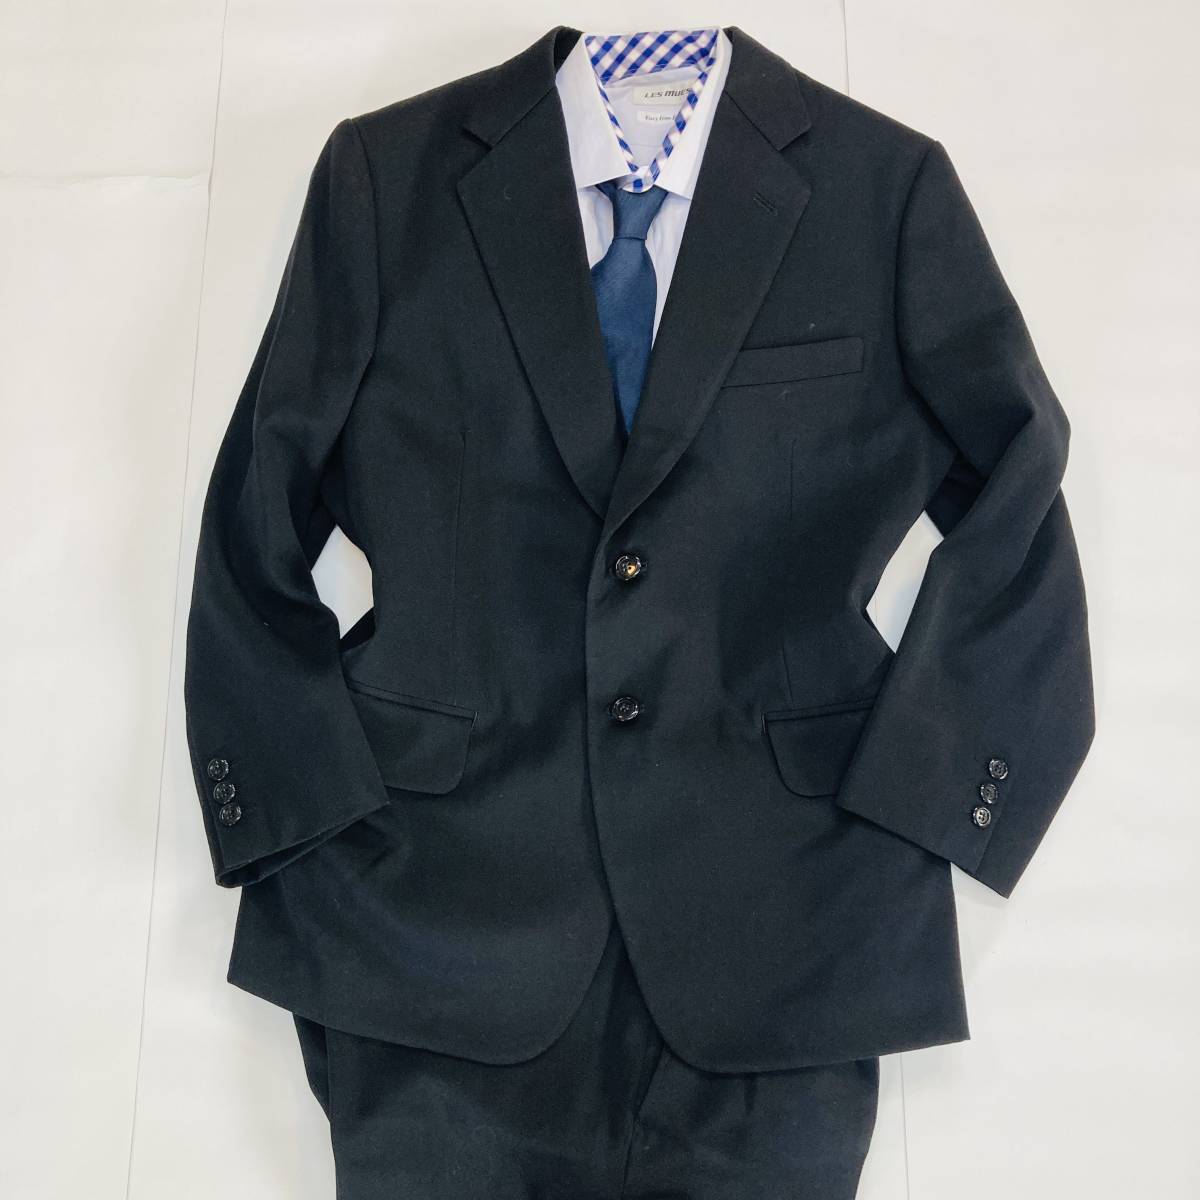 a01551 美品 PEGASUS ペガサス スーツセットアップ ブラックフォーマル シングル 黒 礼服 万能 シンプル オフィススタイリッシュルックの画像1